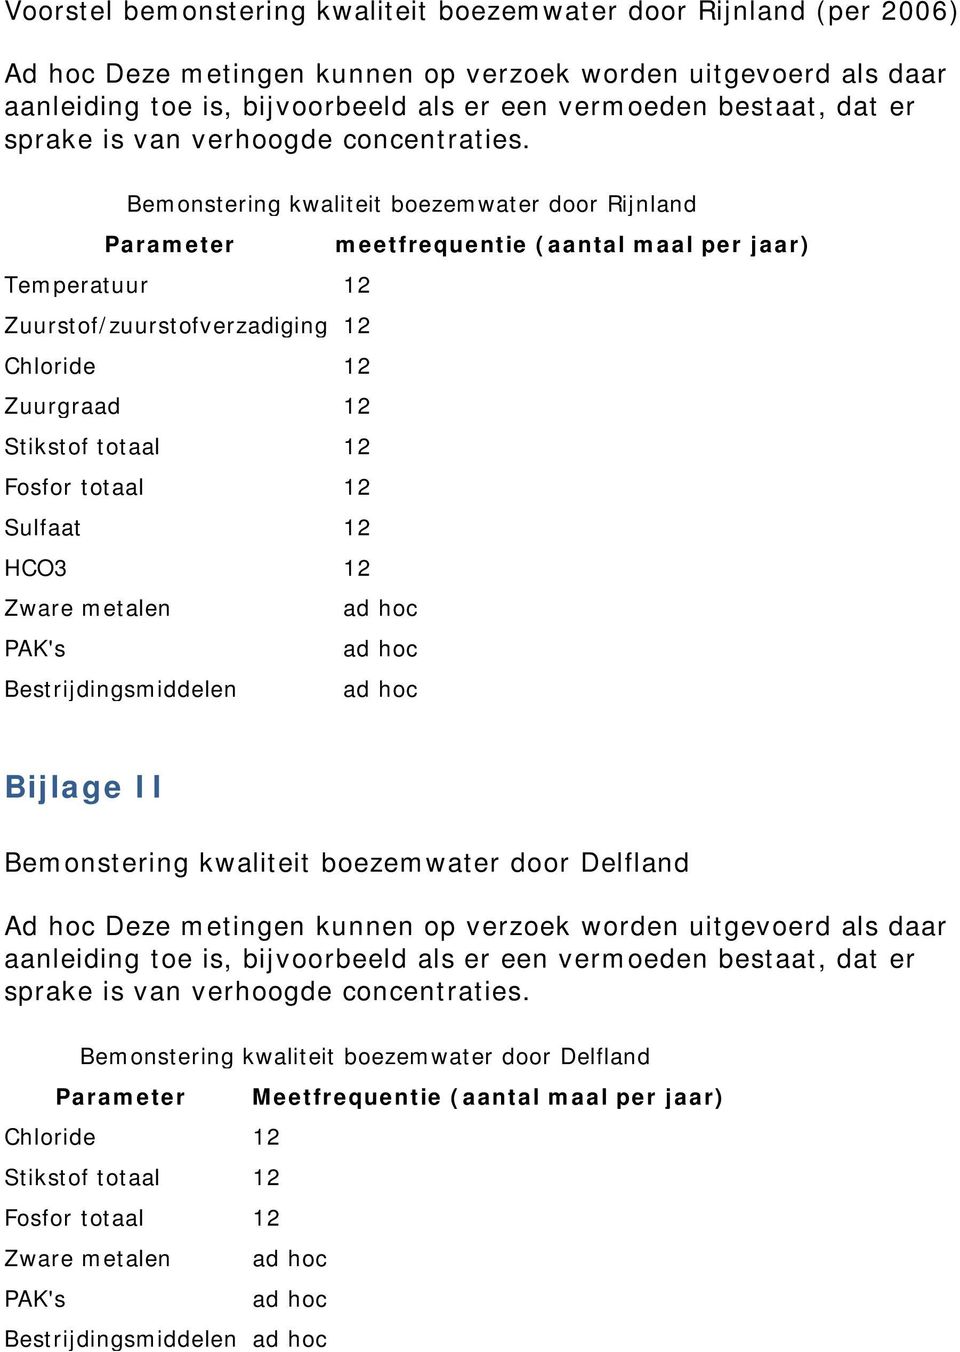 Bemonstering kwaliteit boezemwater door Rijnland Parameter meetfrequentie (aantal maal per jaar) Temperatuur 12 Zuurstof/zuurstofverzadiging 12 Chloride 12 Zuurgraad 12 Stikstof totaal 12 Fosfor